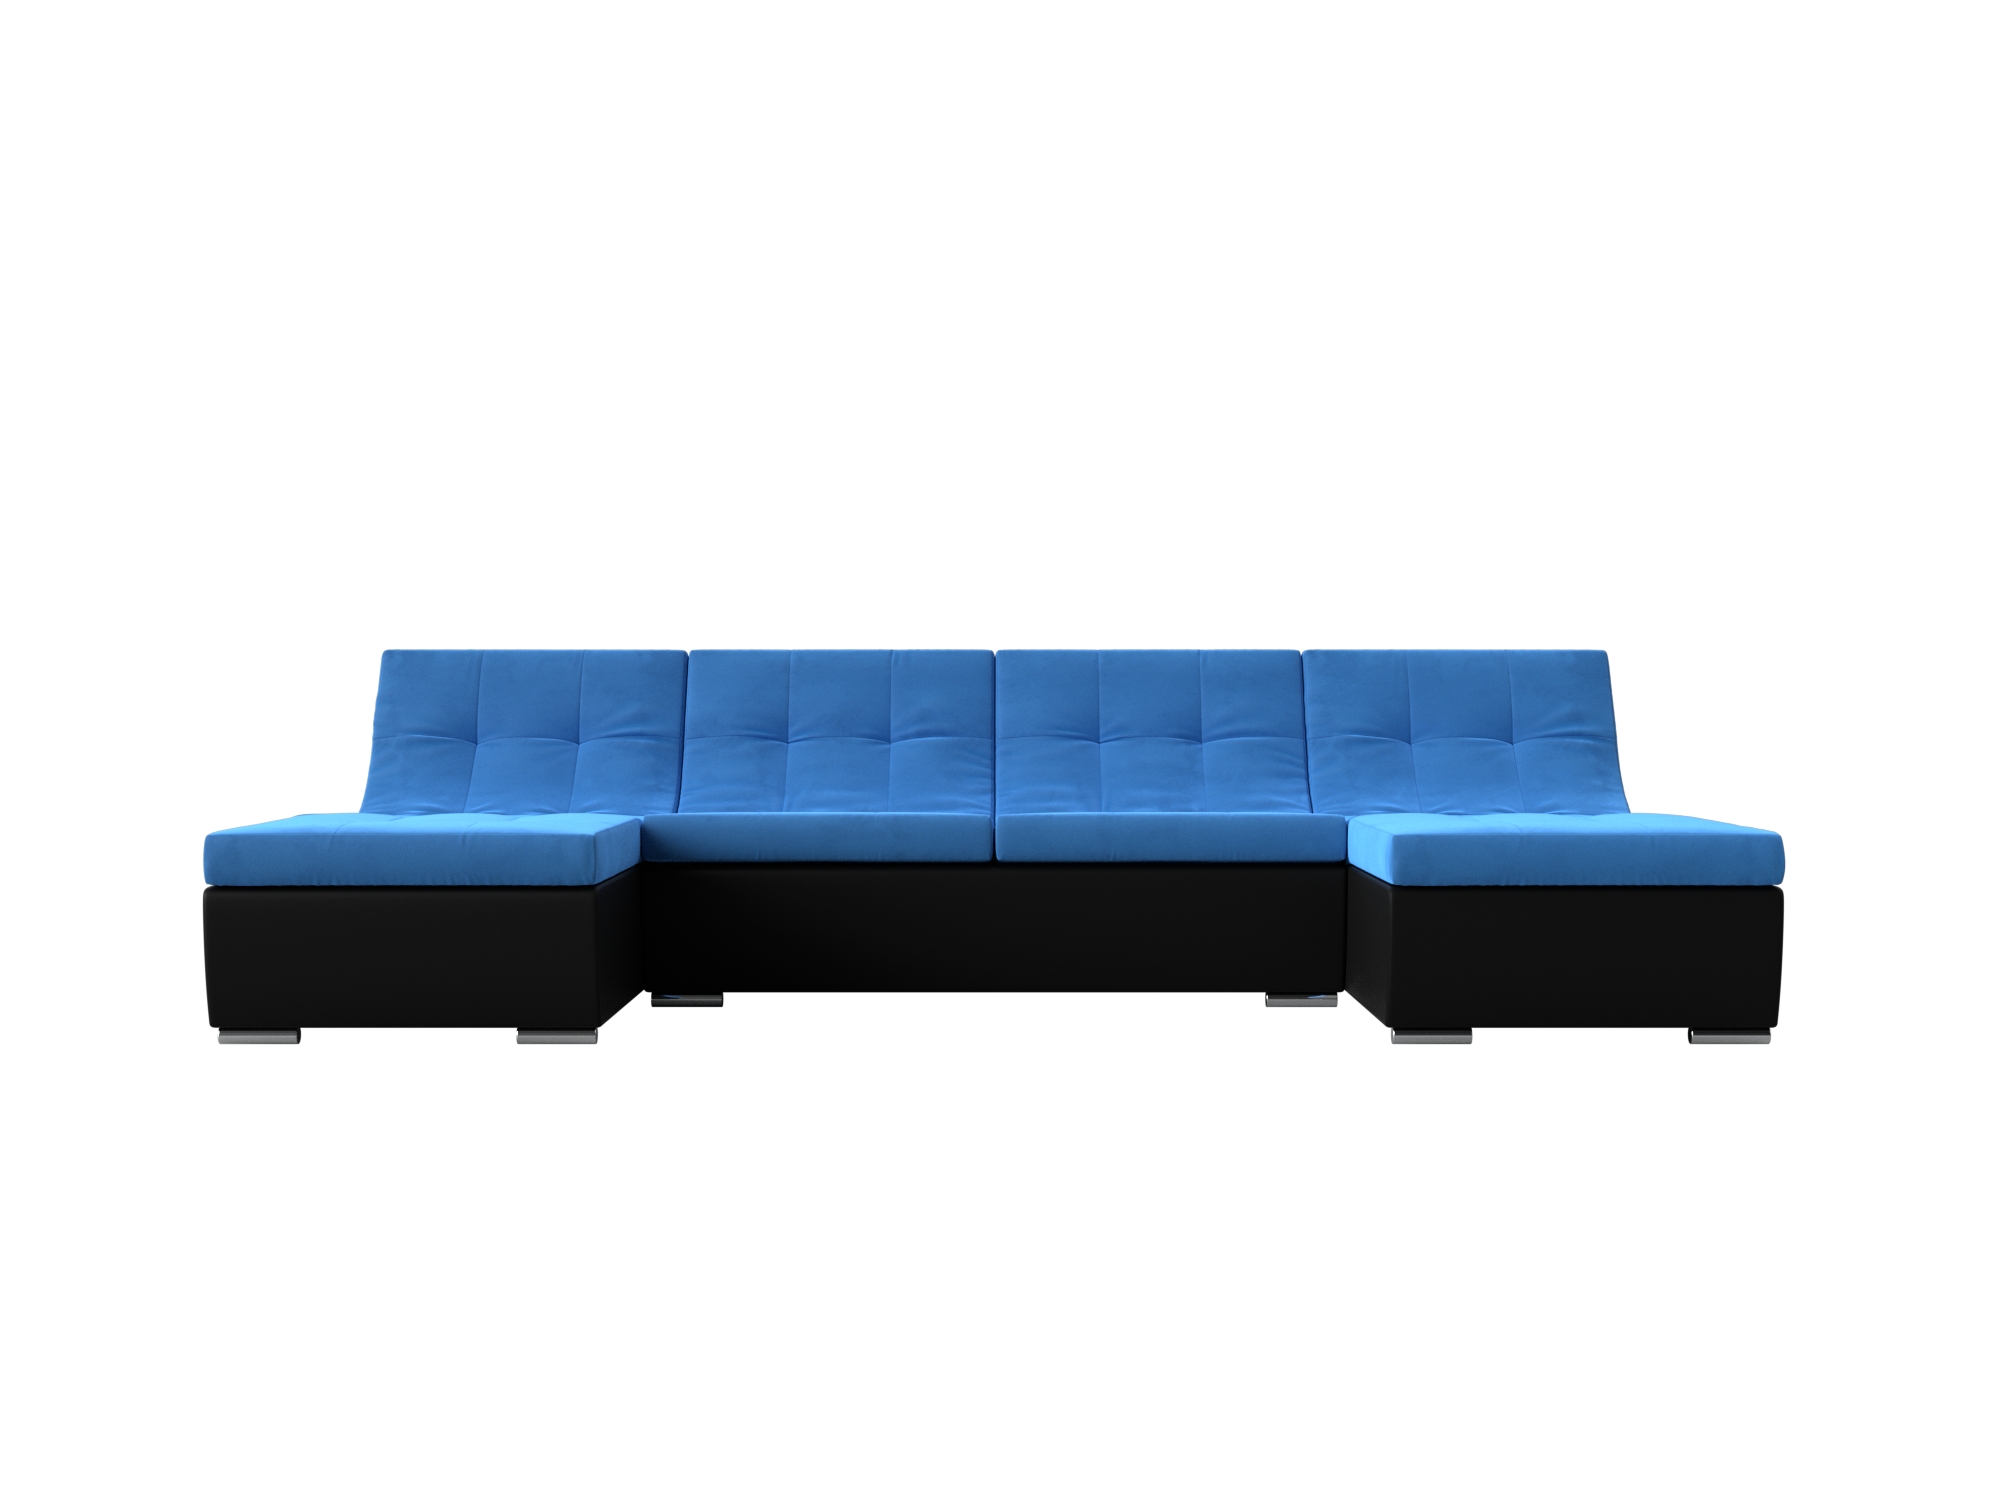 П-образный модульный диван Монреаль MebelVia Голубой, Черный, Велюр, Экокожа, ЛДСП п образный модульный диван монреаль mebelvia голубой черный велюр экокожа лдсп